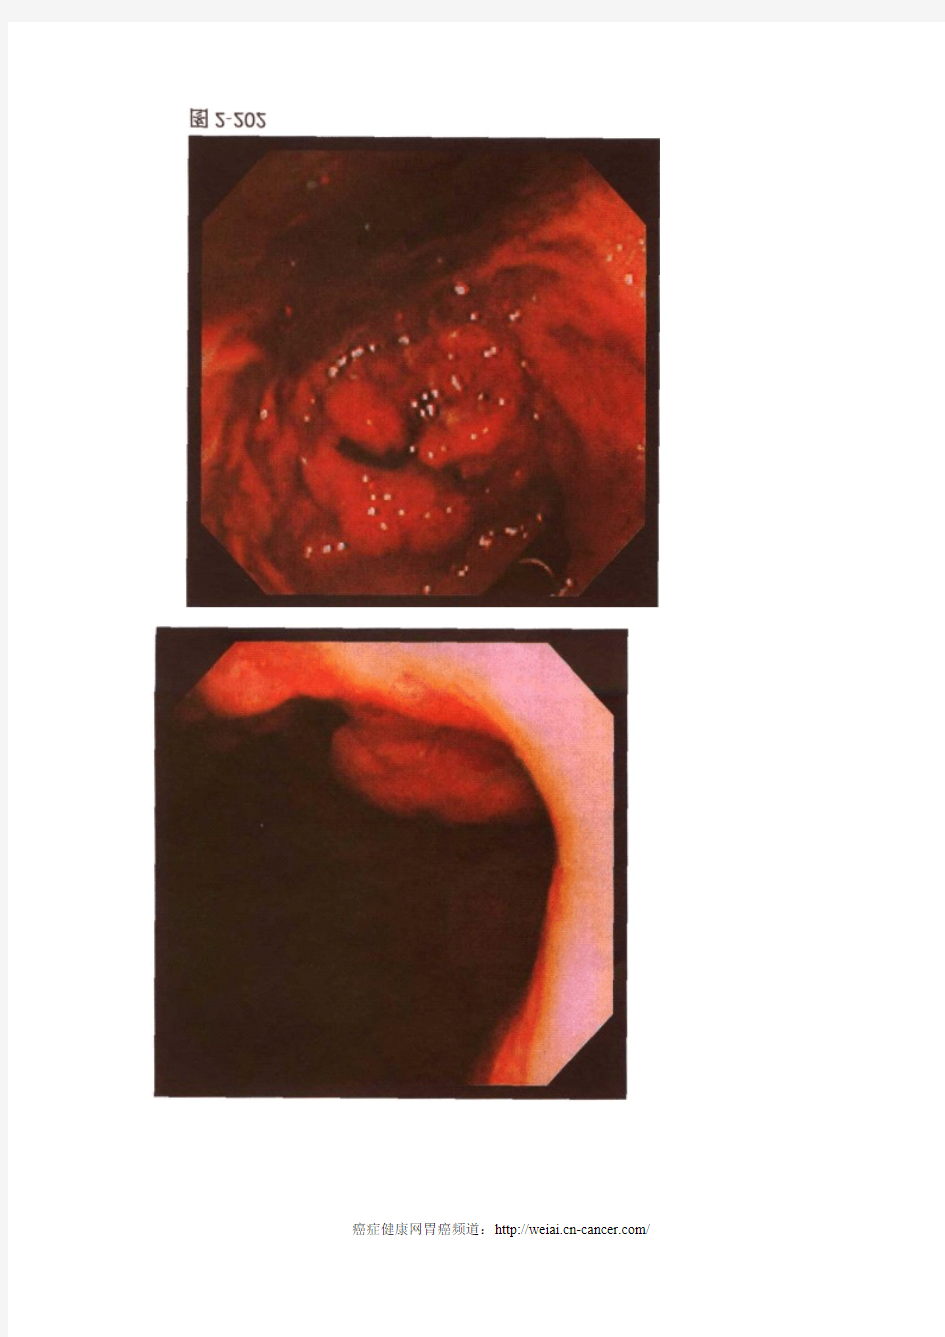 进展期胃癌胃镜图片